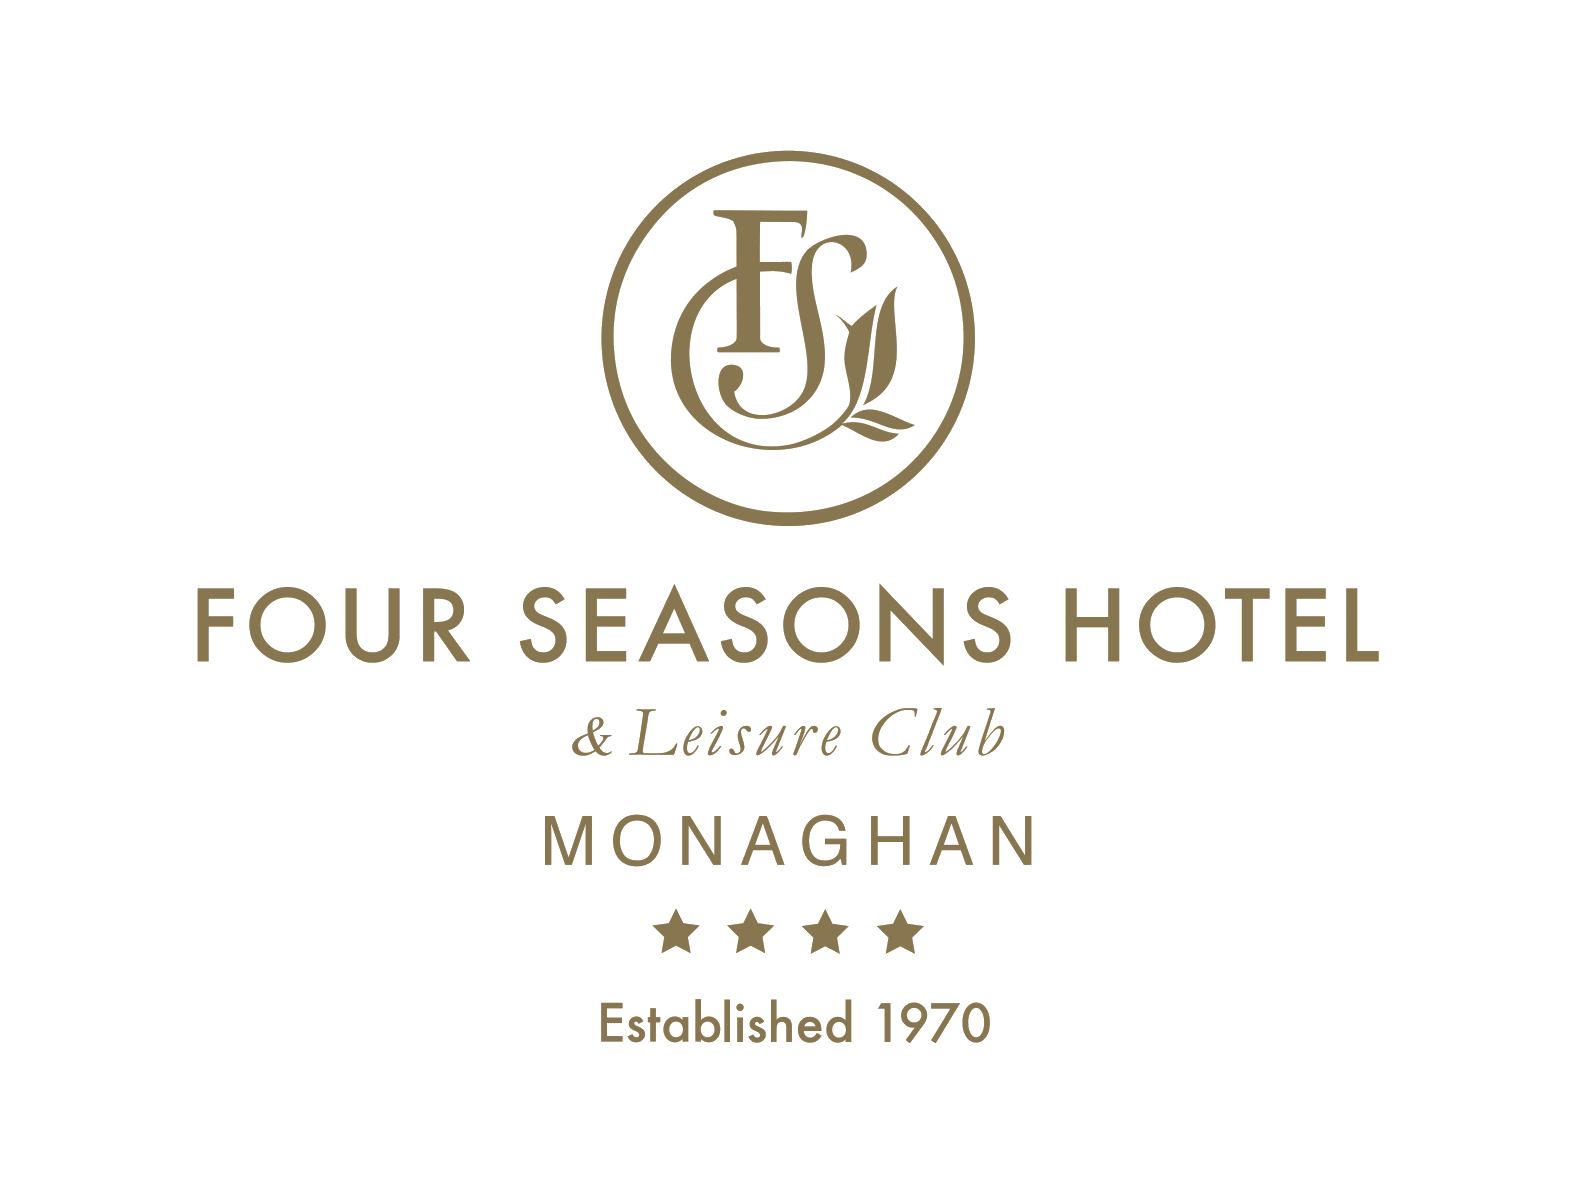 Four Seasons Hotel & Leisure Club Monaghan